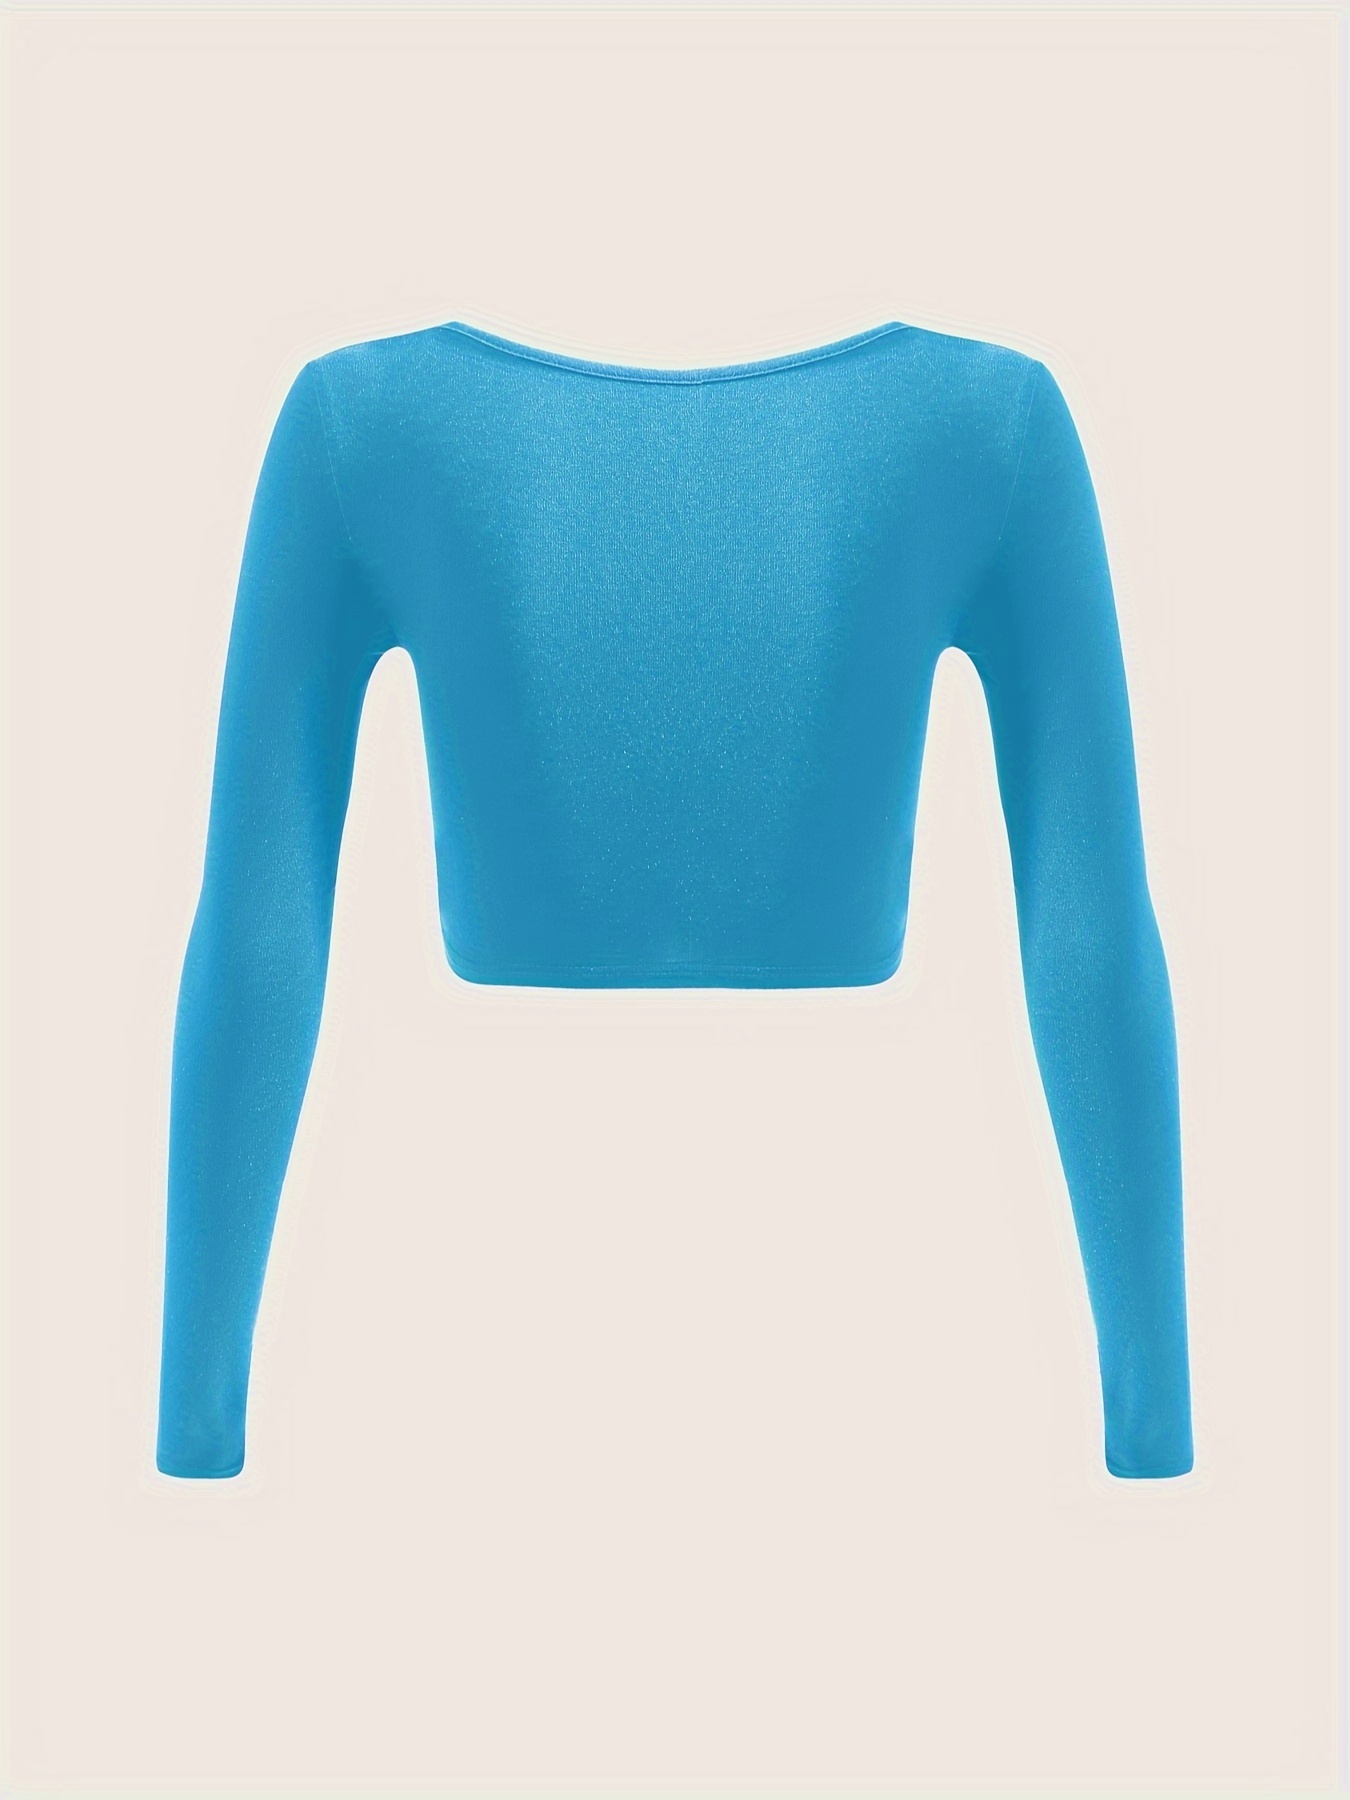 Casual Solid Scoop Neck Crop Top Long Sleeve Baby Blue Women Tops (Women's)